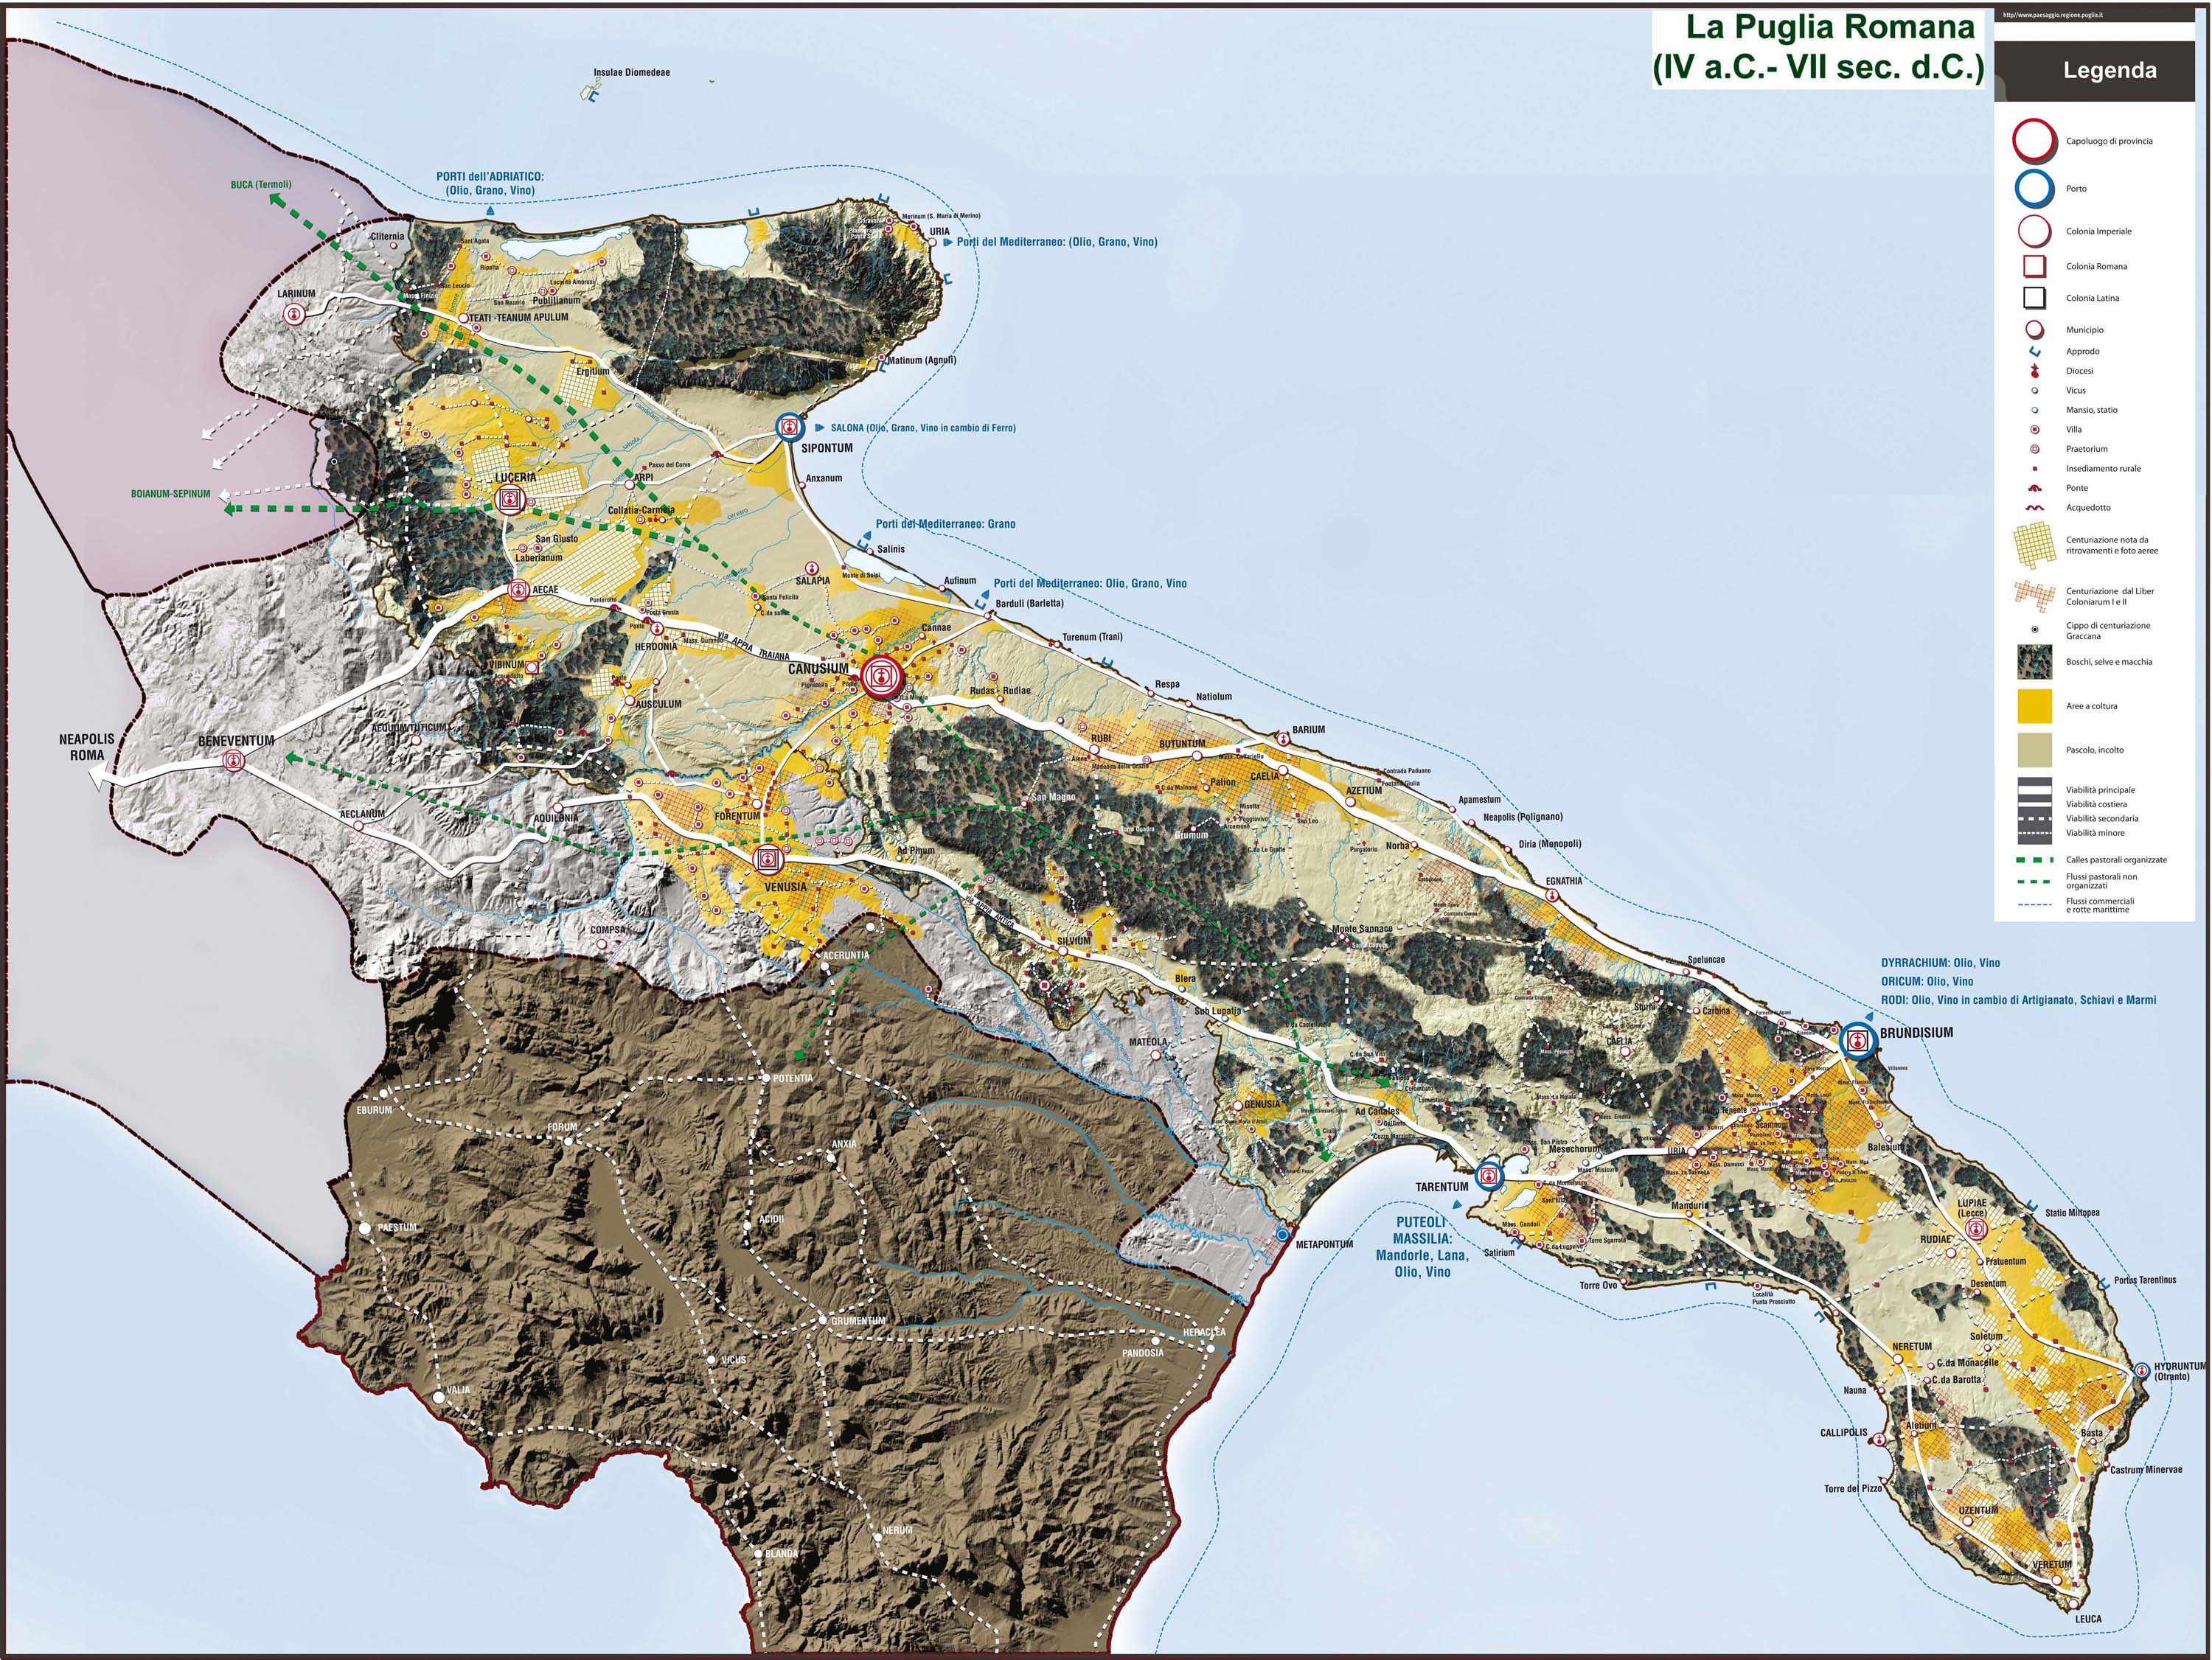 La Puglia Romana dal IV sec. a.C. al VII sec. d.C.